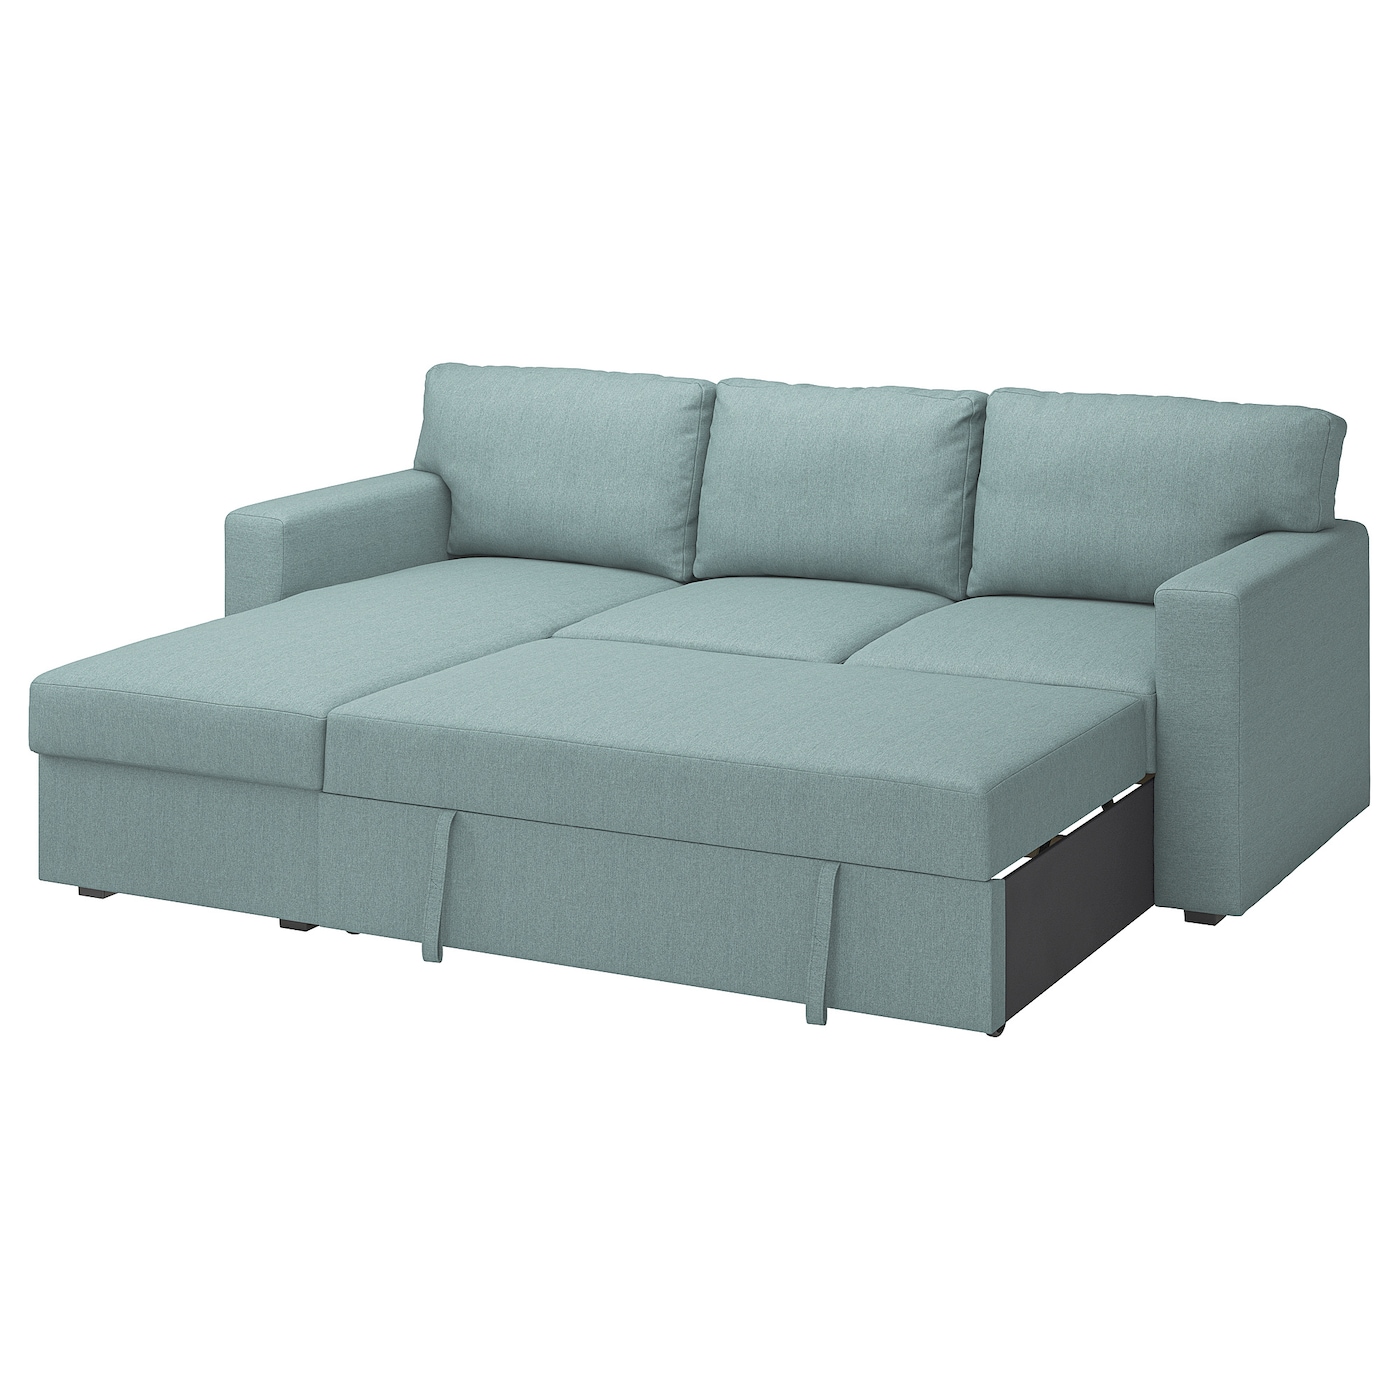 БОРСЛОВ 3-местный диван-кровать + диван, Тибблби светло-серый бирюзовый BÅRSLÖV IKEA диван кровать ramart design йорк премиум дк3 juno ash